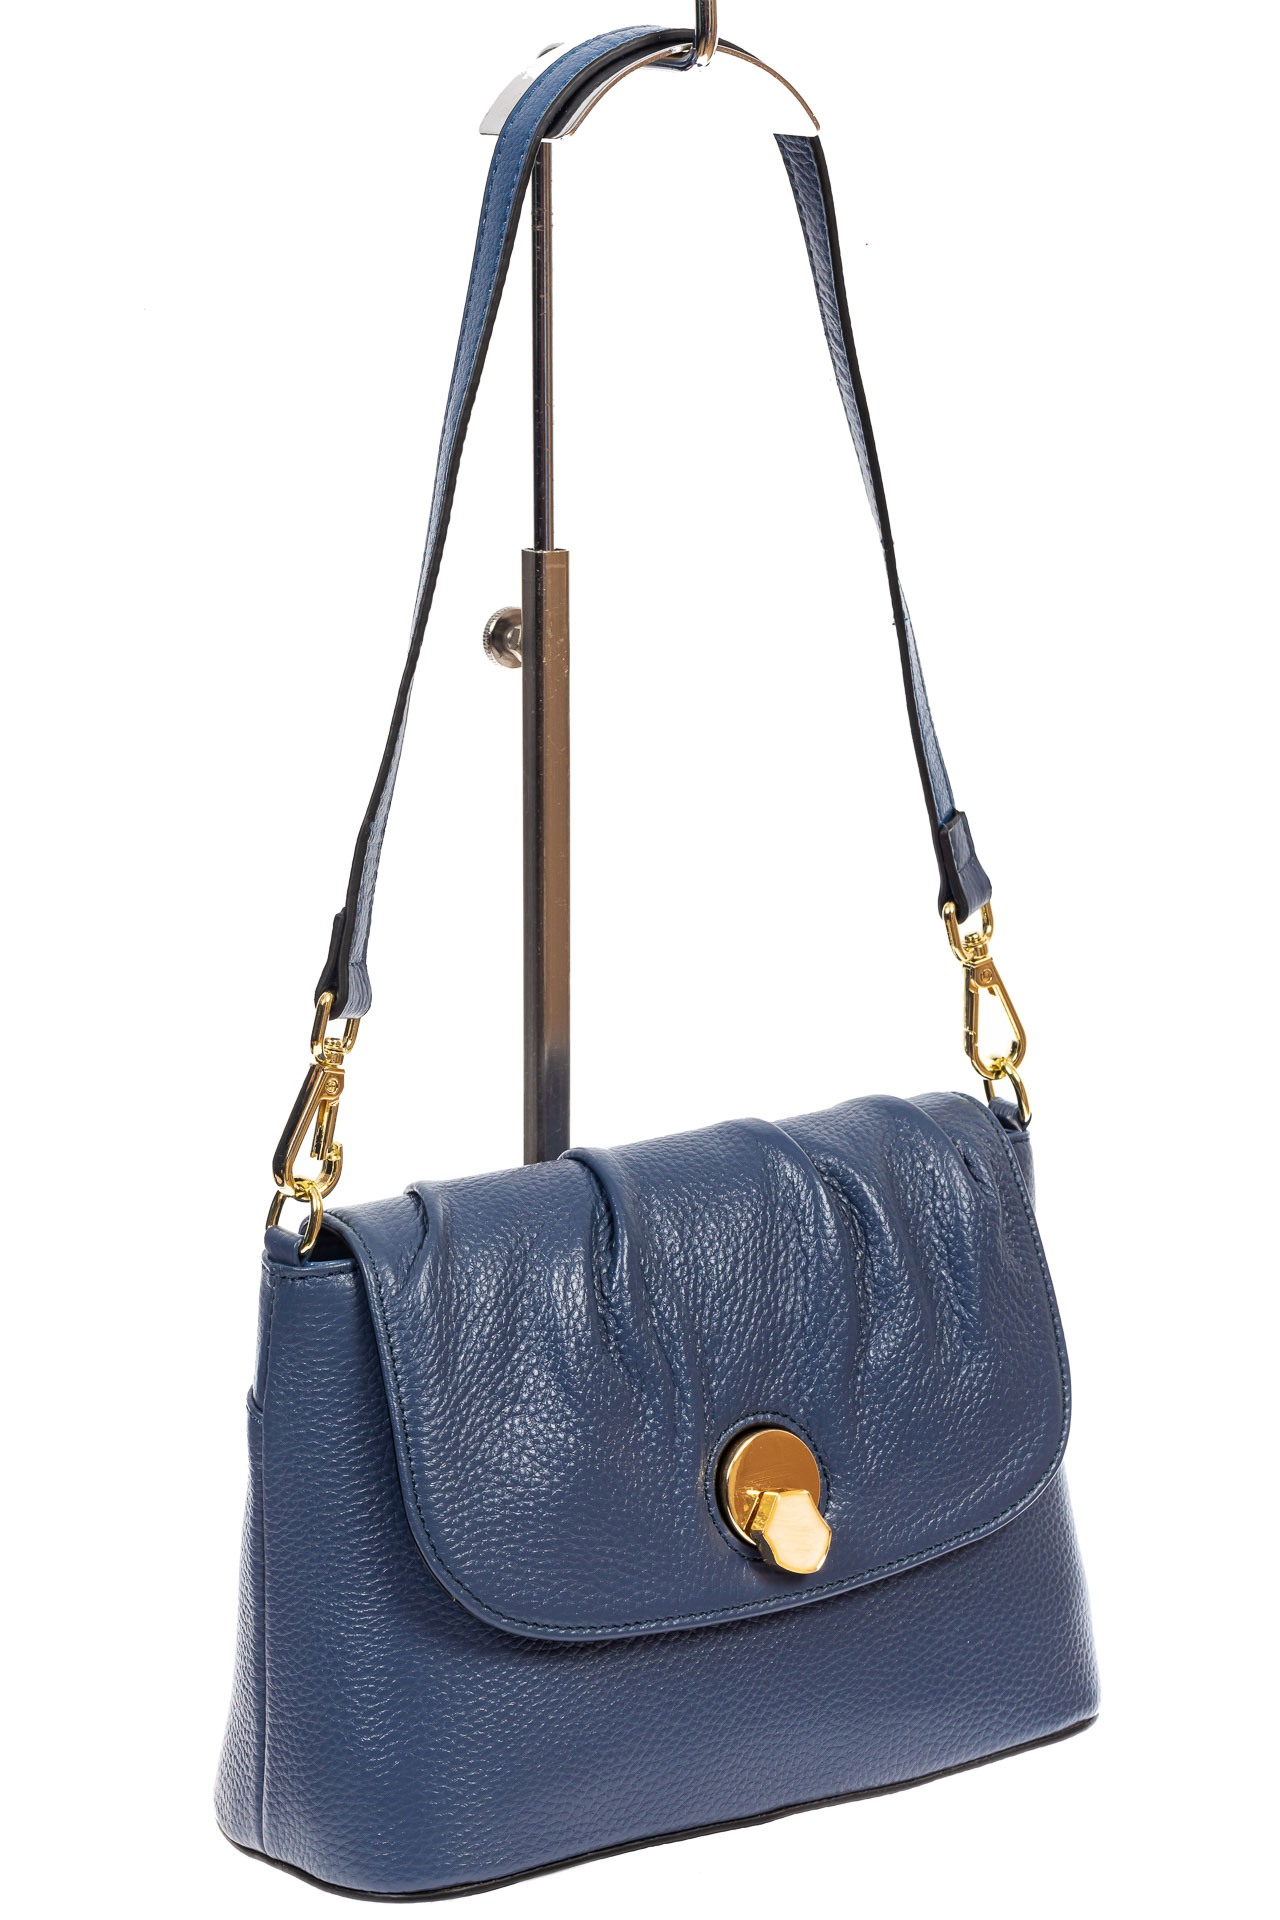 Маленькая женская сумка с замком-вертушкой, цвет синий